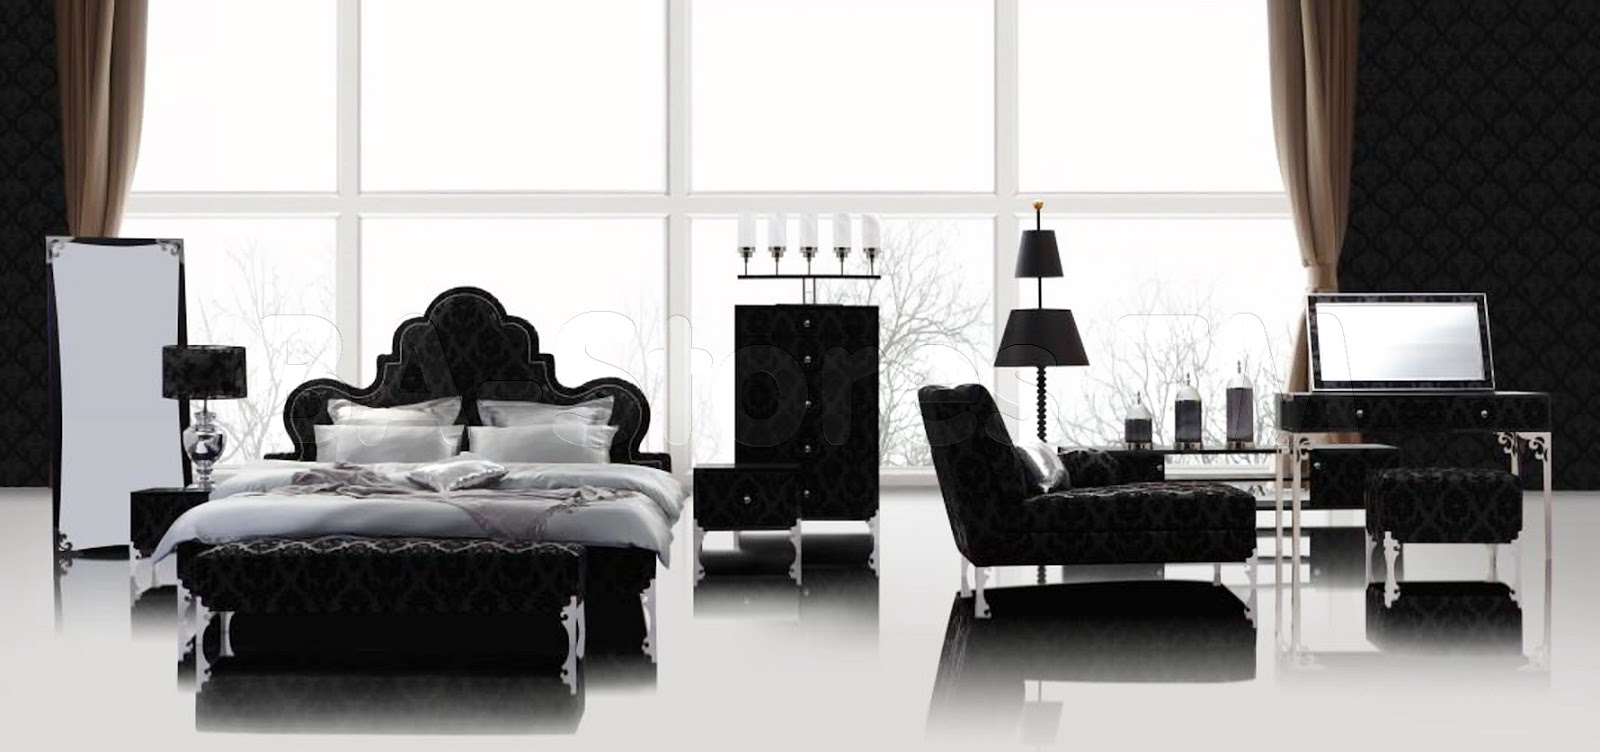 Gothic home decor Furnitures via simphome 18